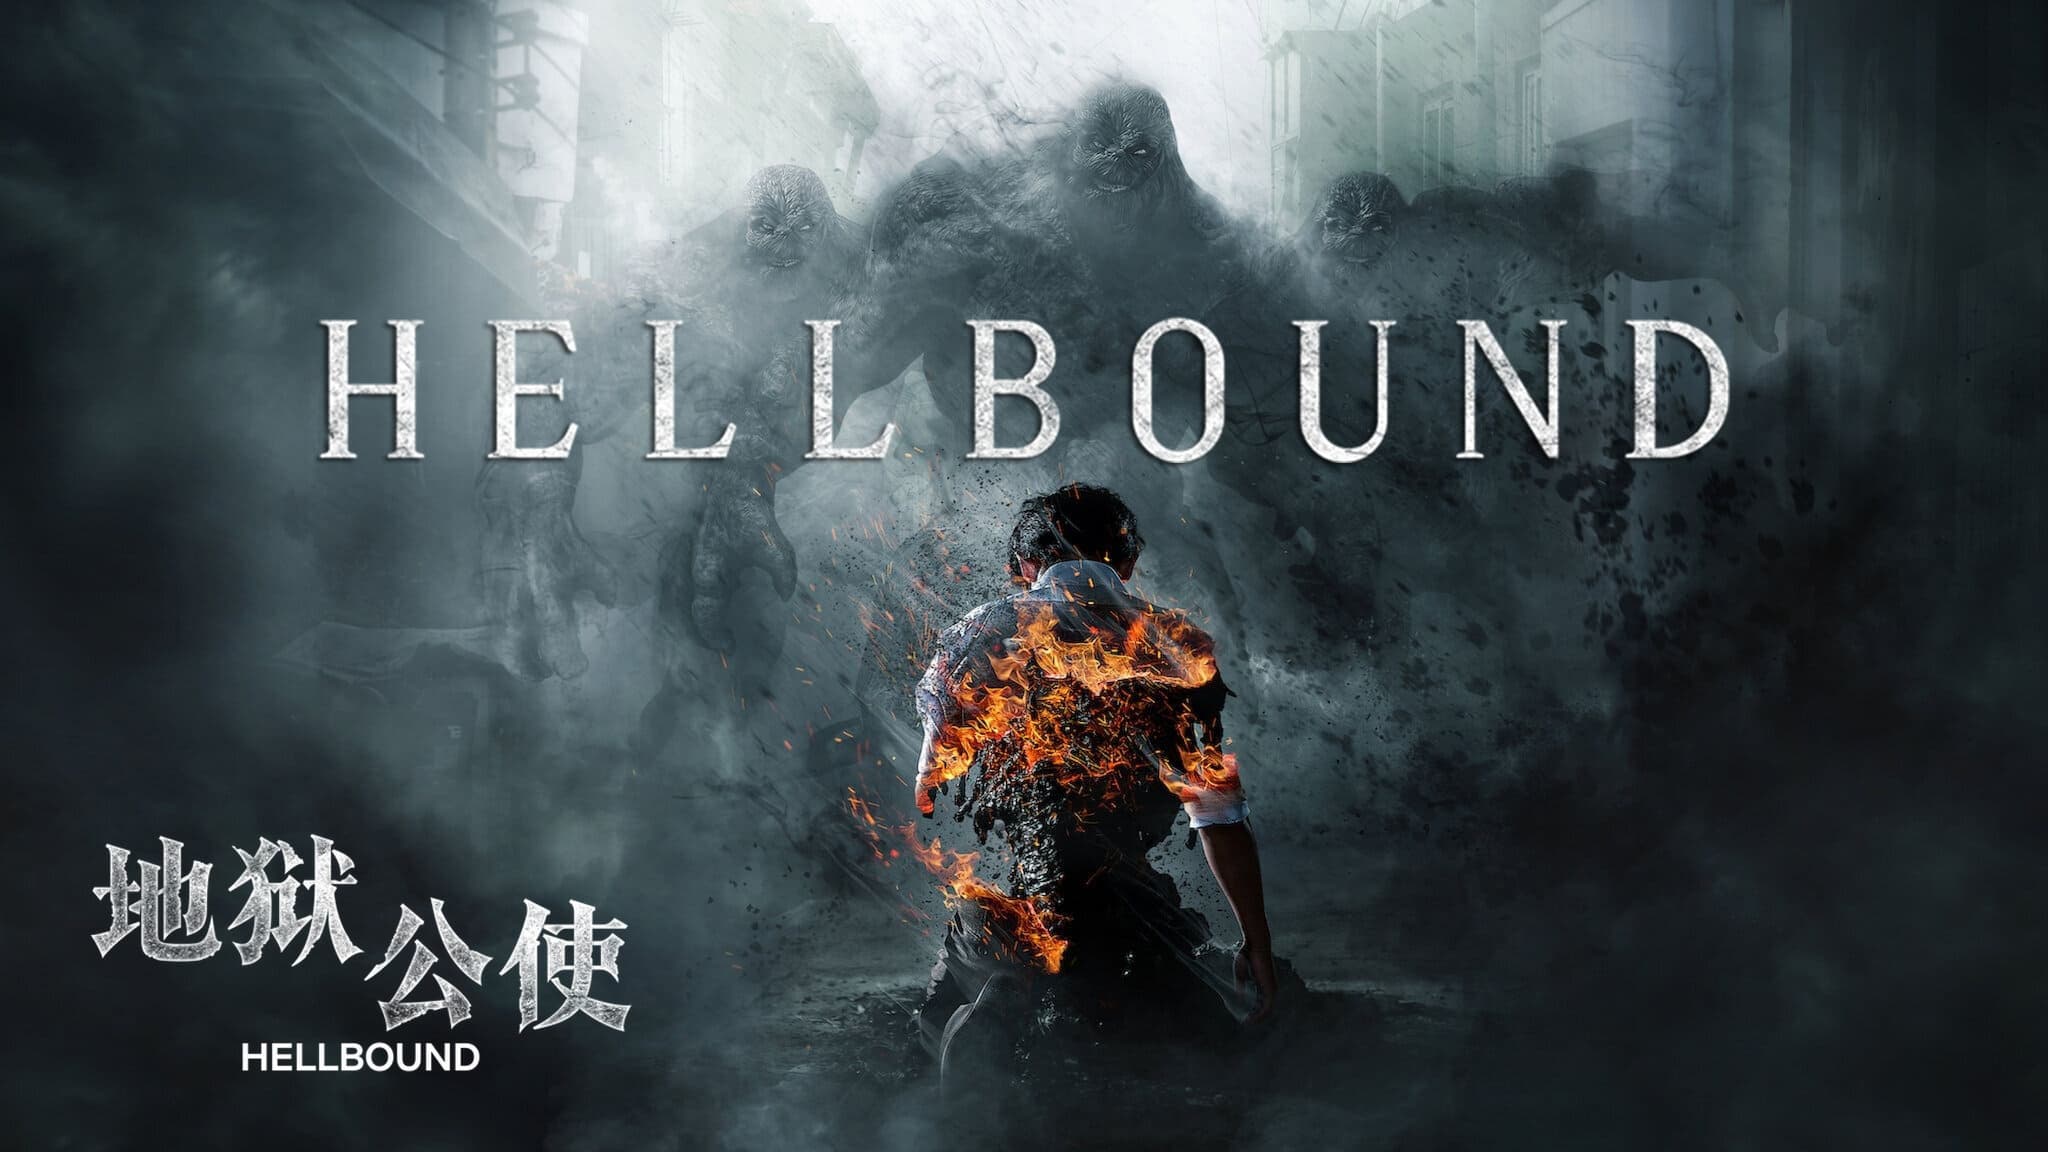 ทัณฑ์นรก Hellbound ออนไลน์โดยสมบูรณ์ในปี 2021